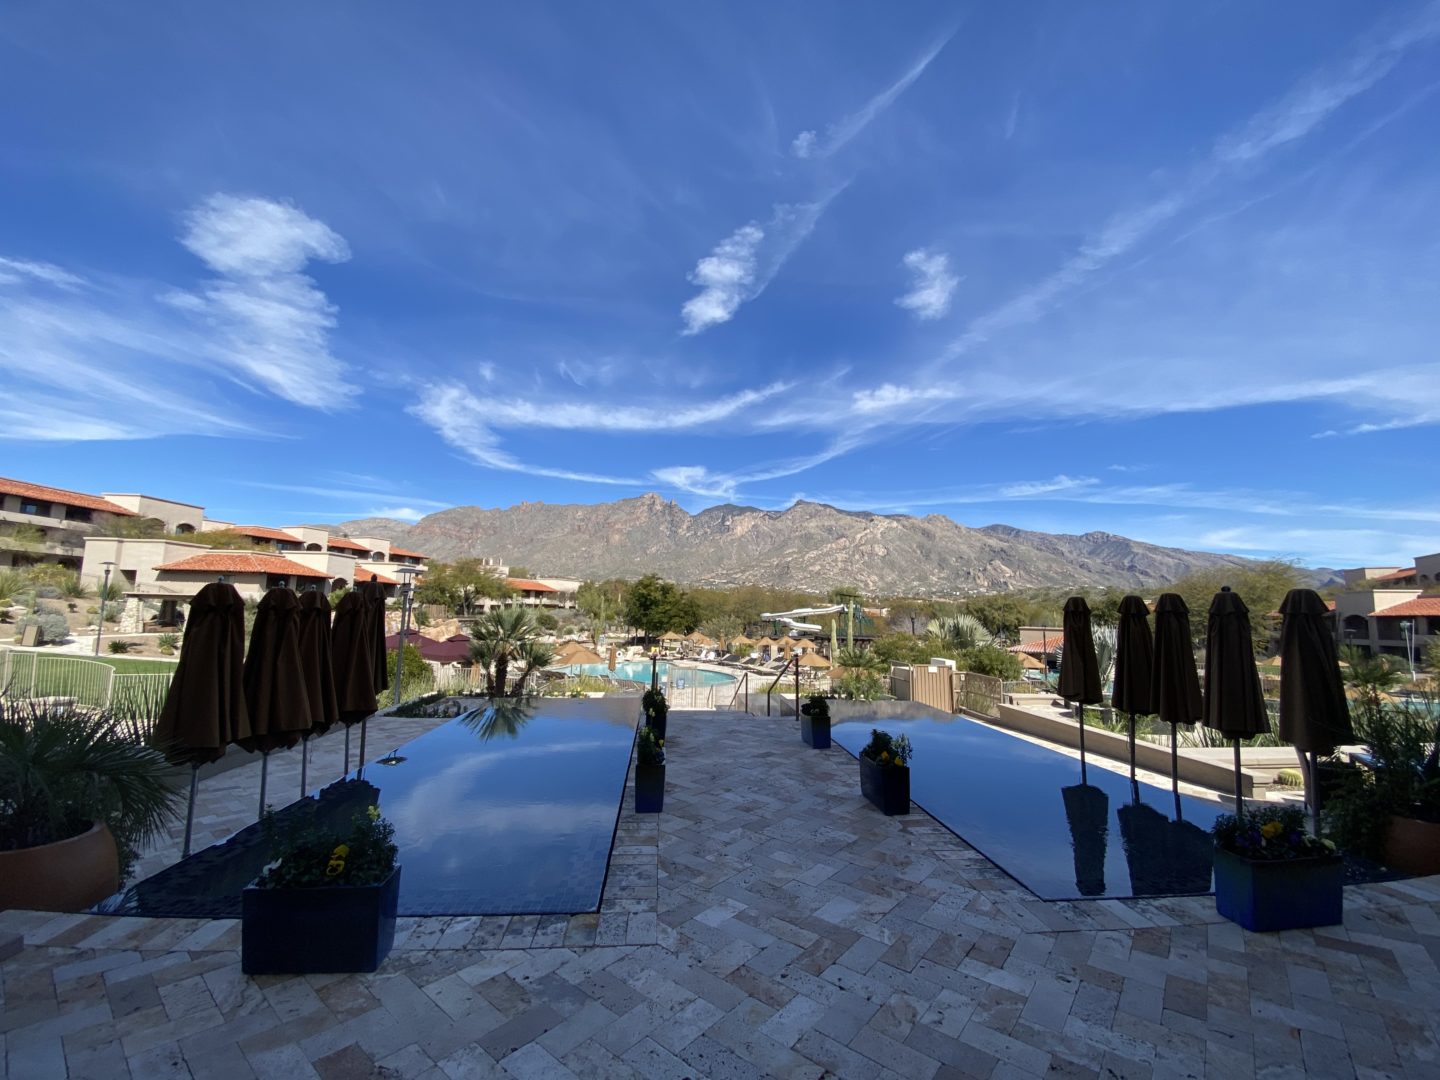 The Westin La Paloma Resort and Spa in Tucson, Arizona 